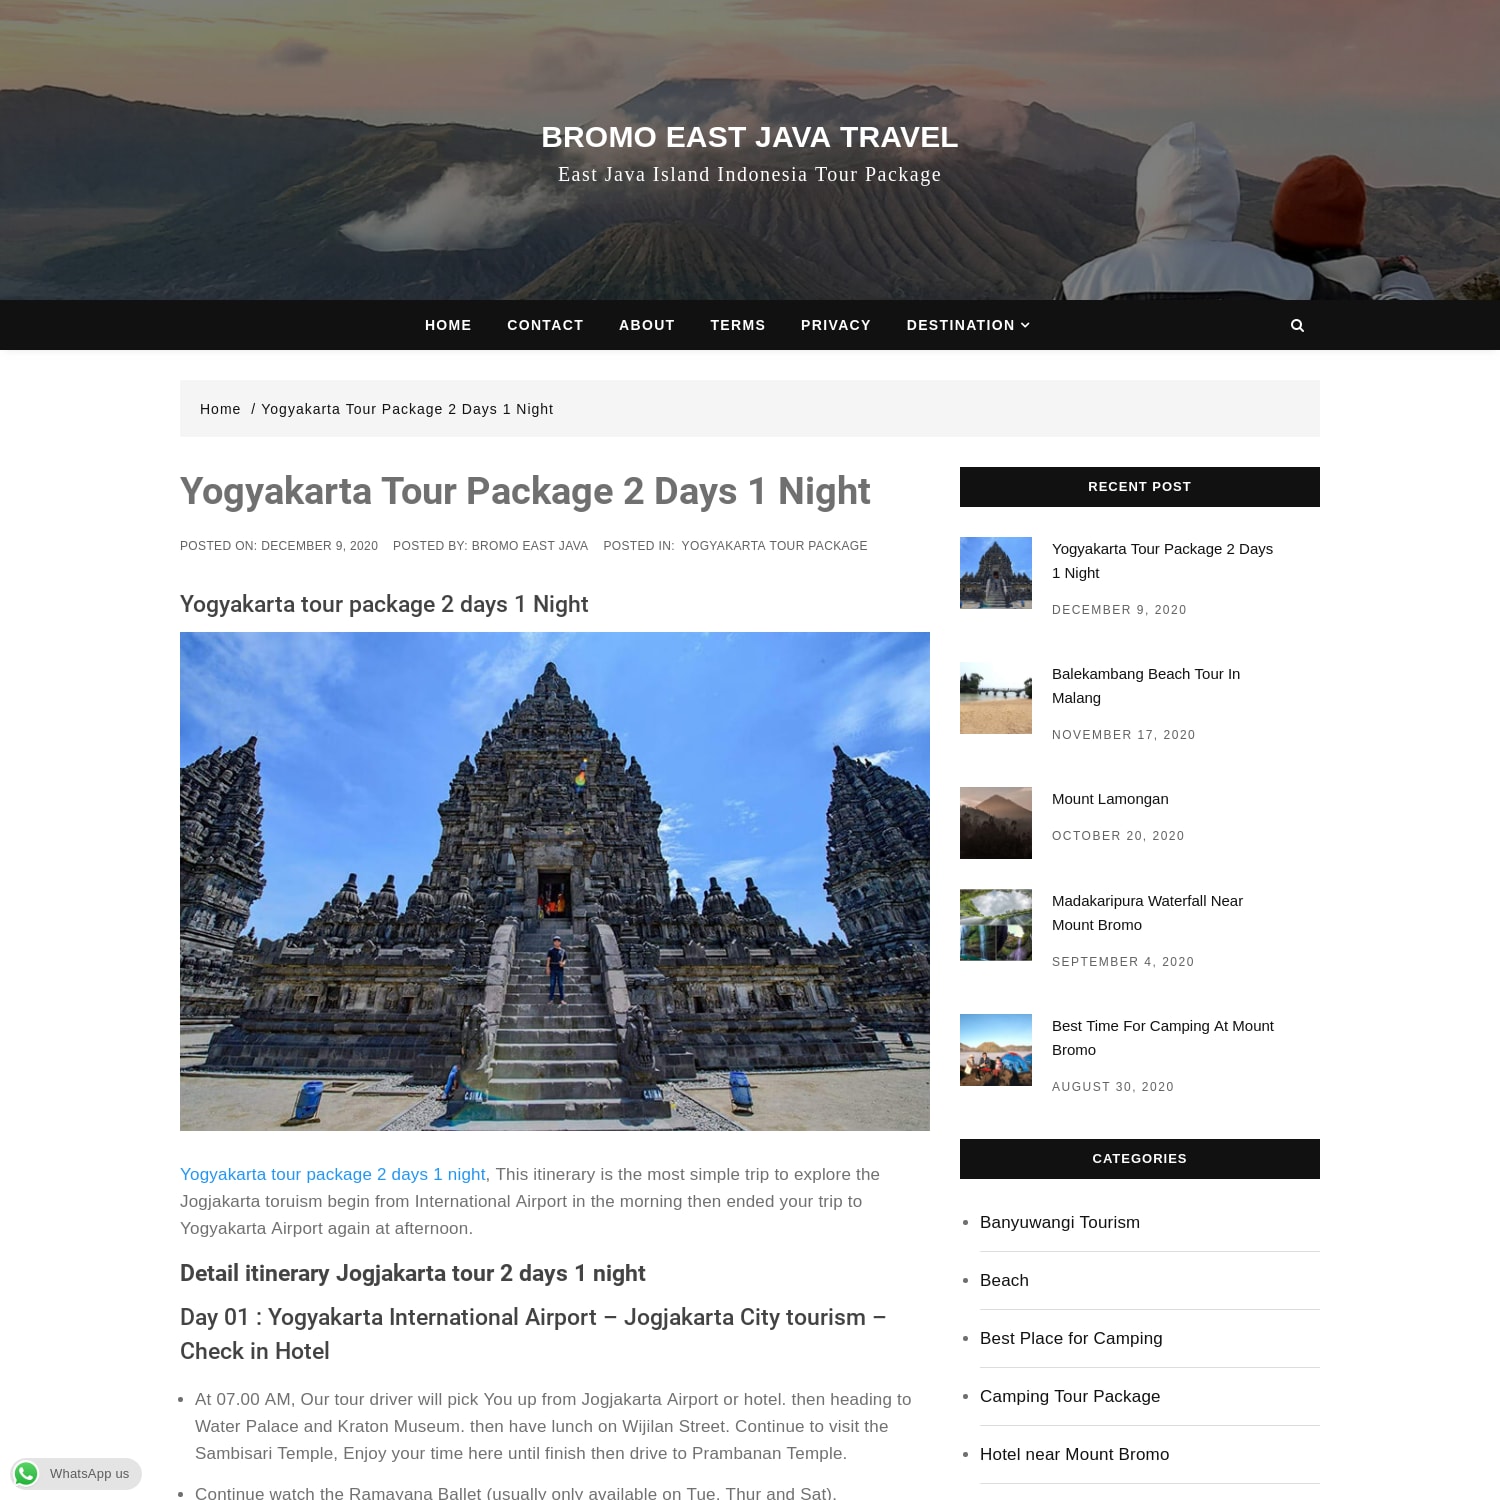 Yogyakarta tour package 2 days 1 night